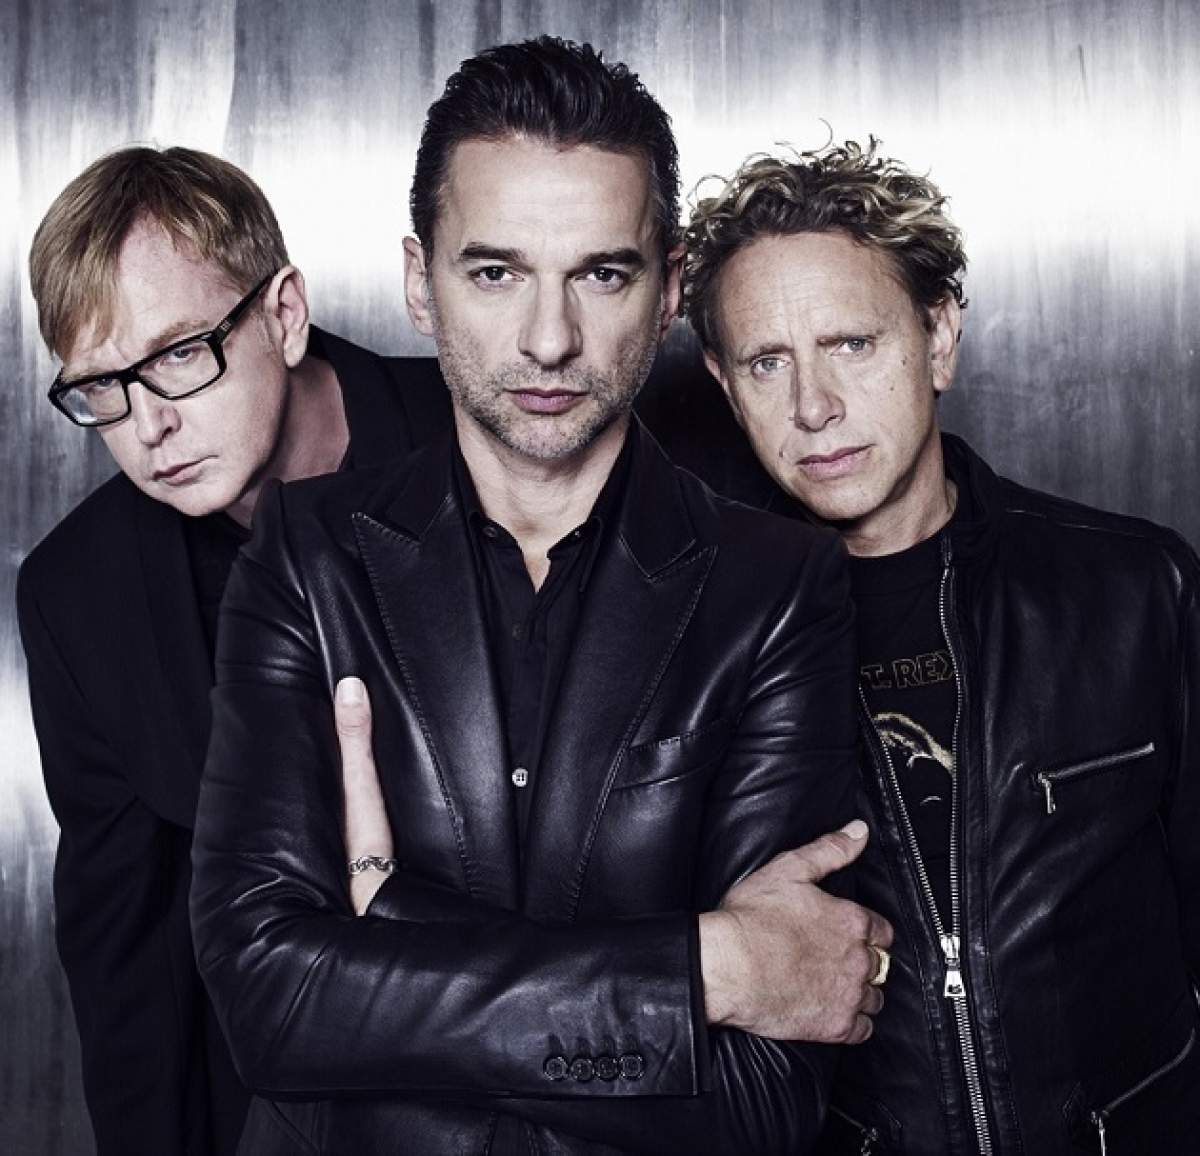 Baietii de la Depeche Mode au tras de fiare inaintea concertului de la Bucuresti